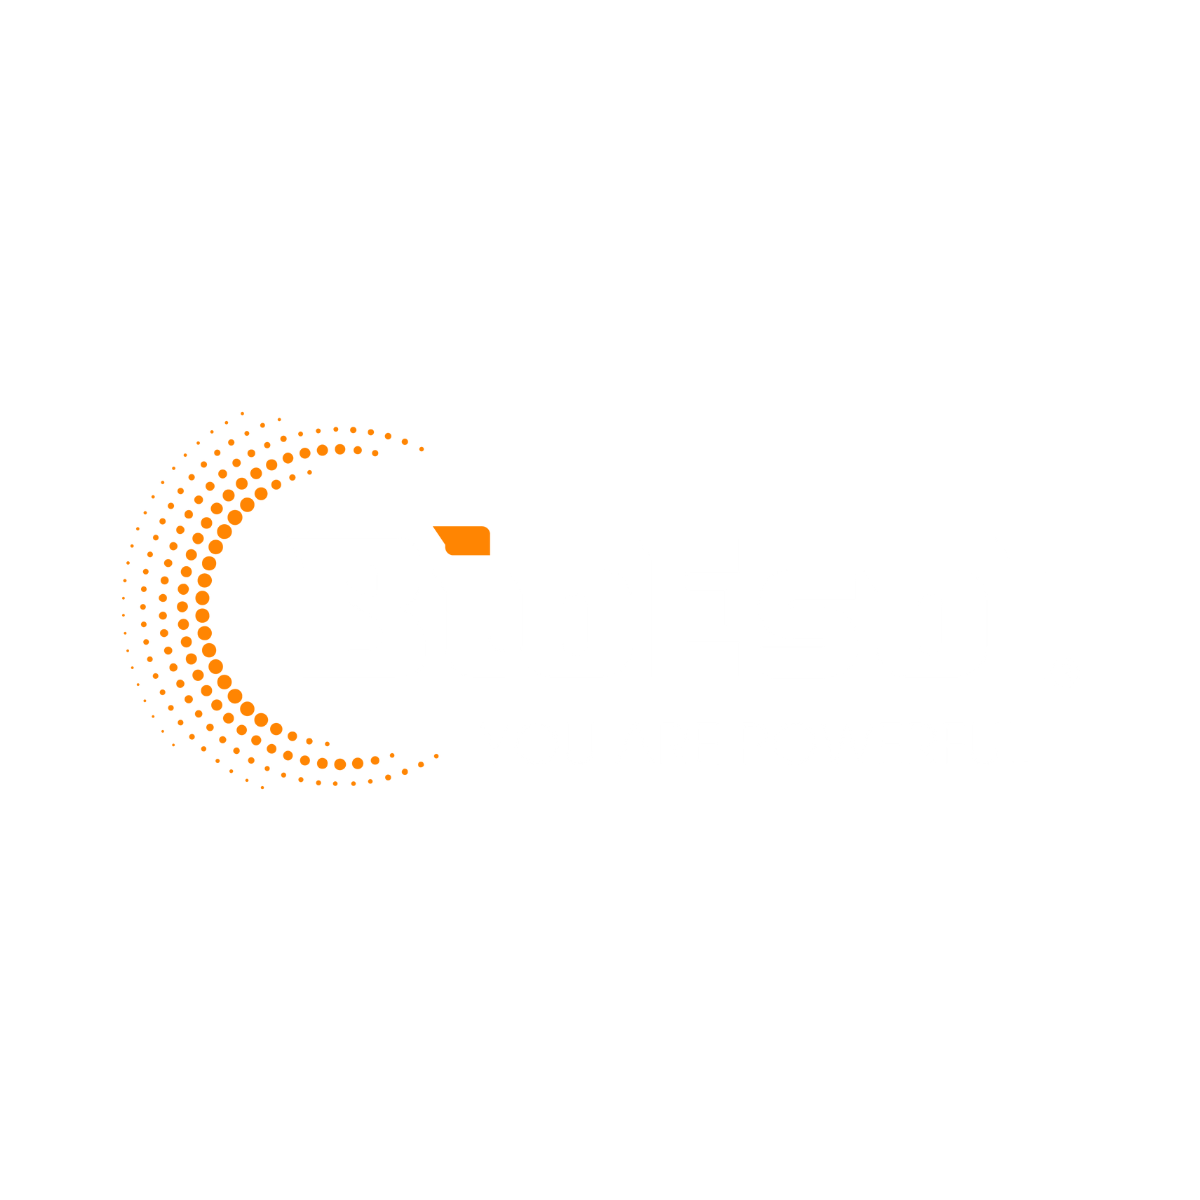 Bioesol | Almacenamiento de energía renovable